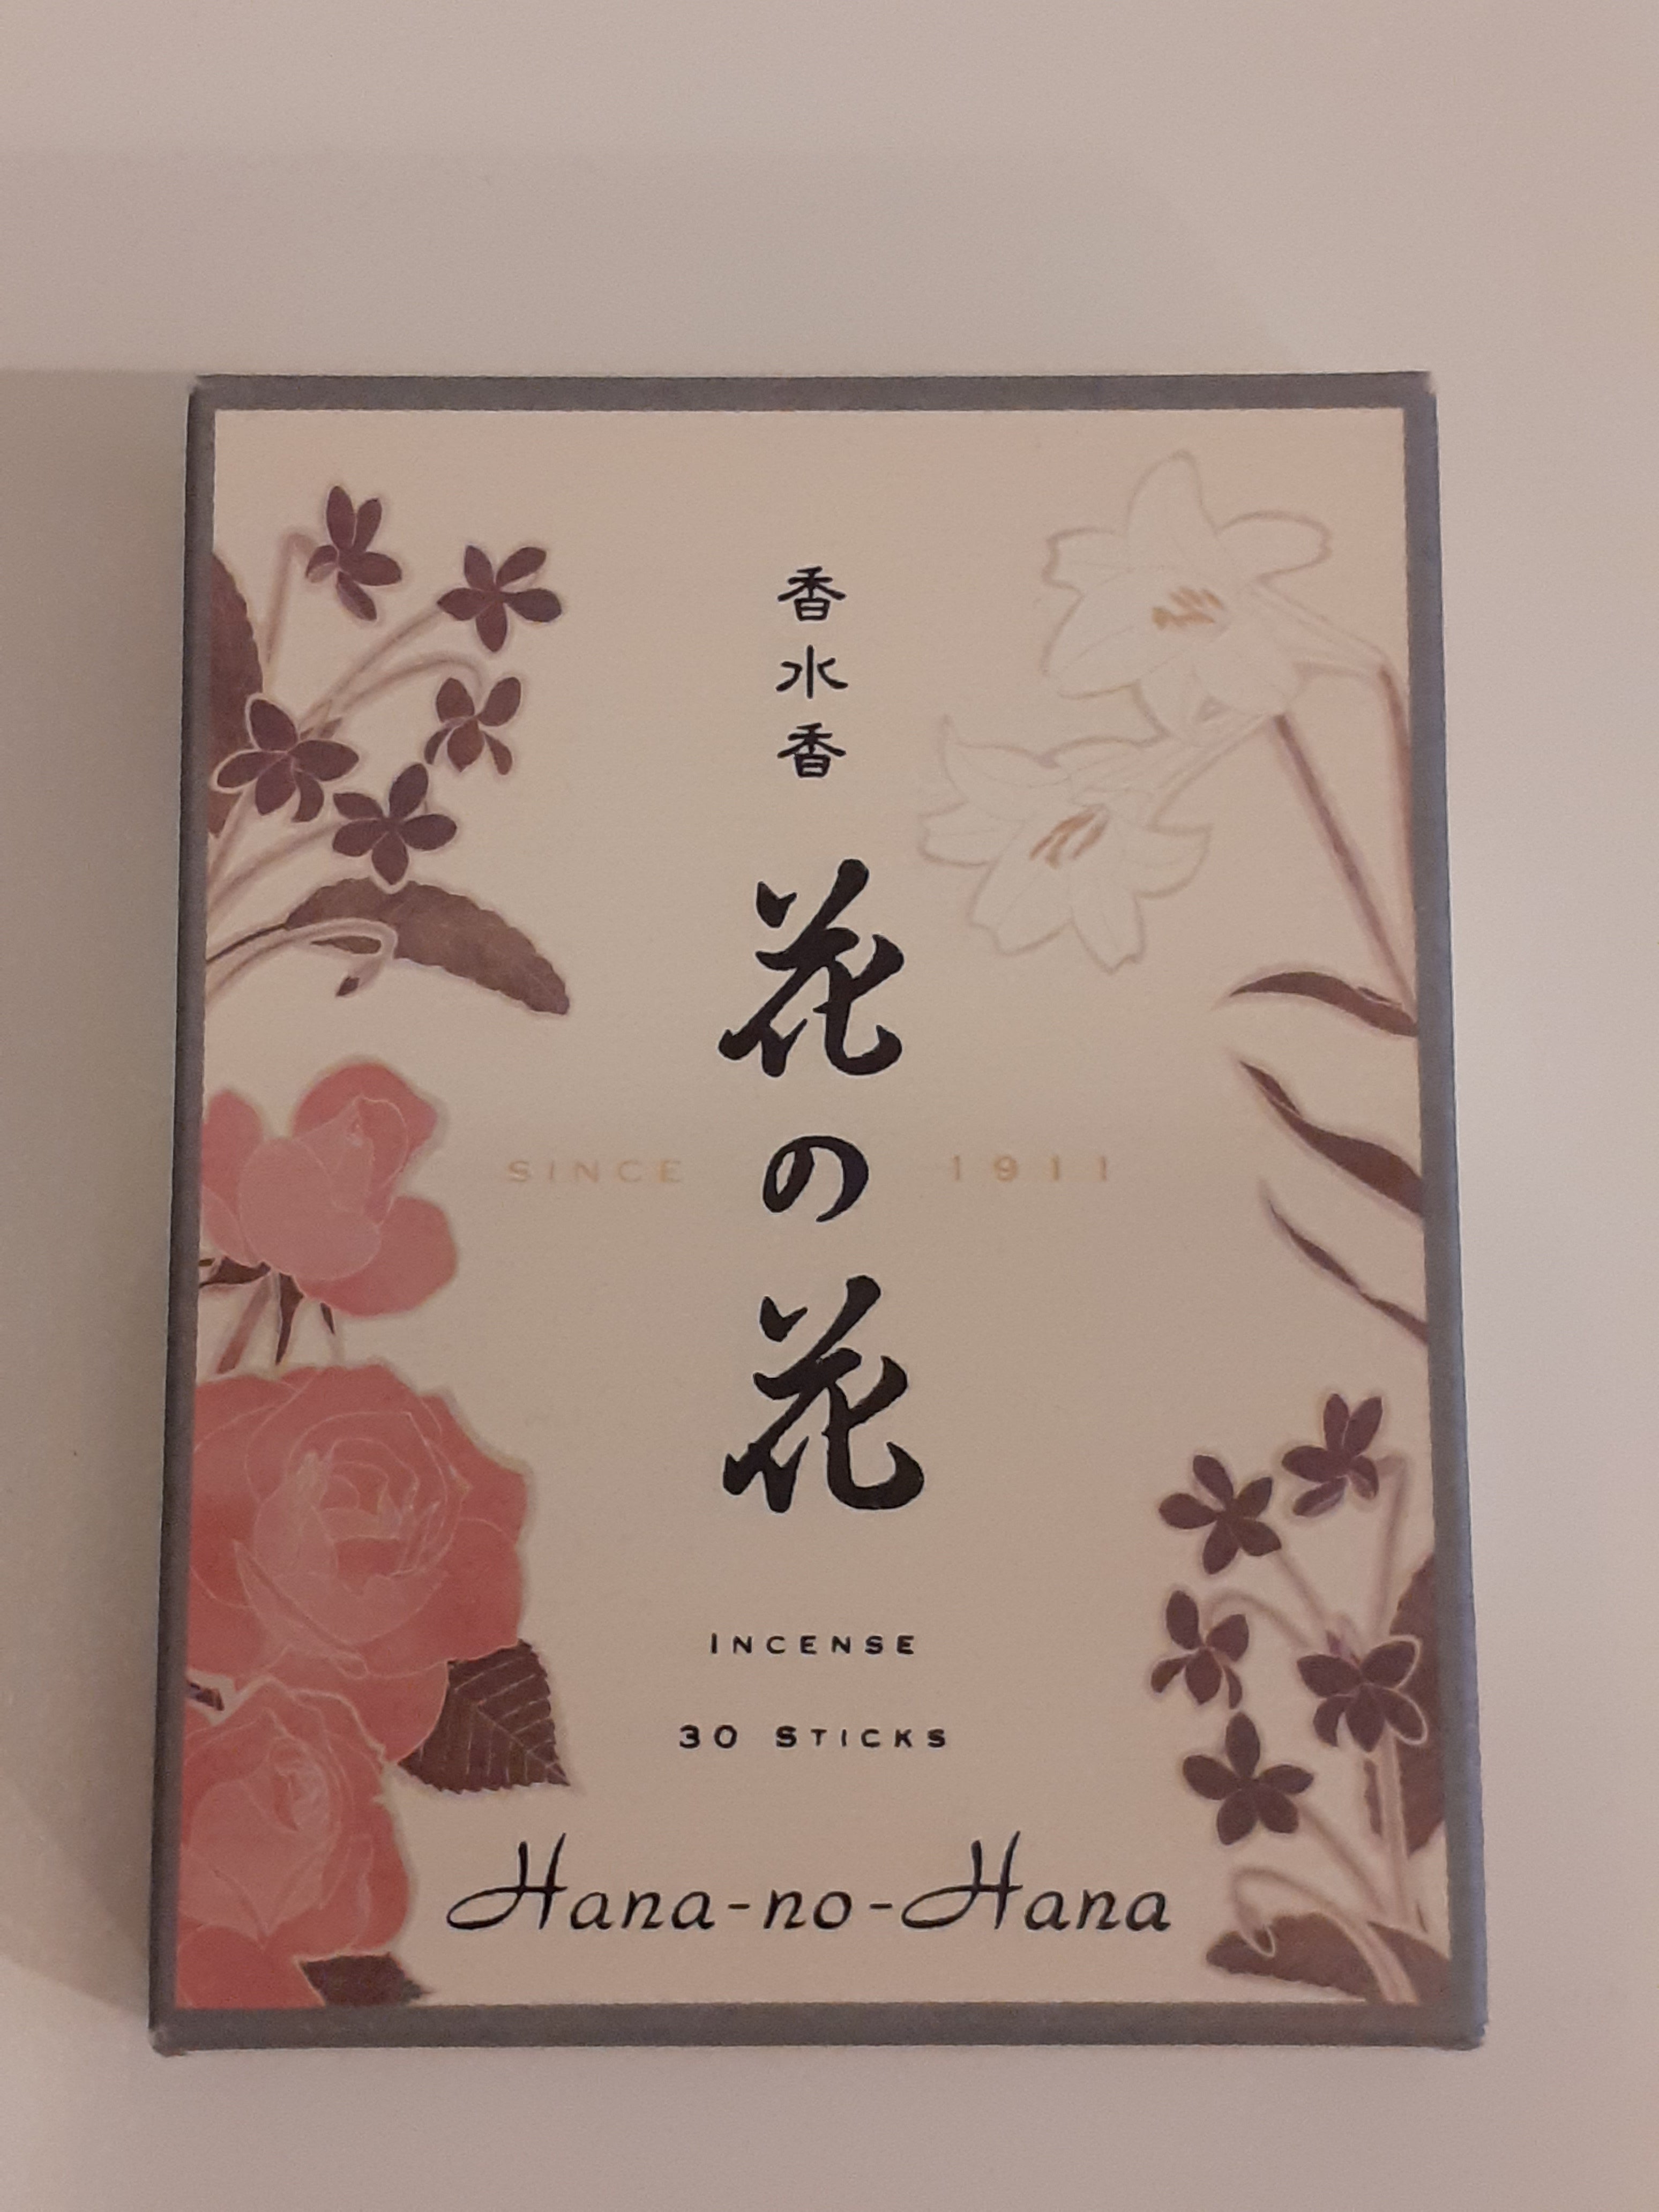 Incenso "Hana-no-Hana"